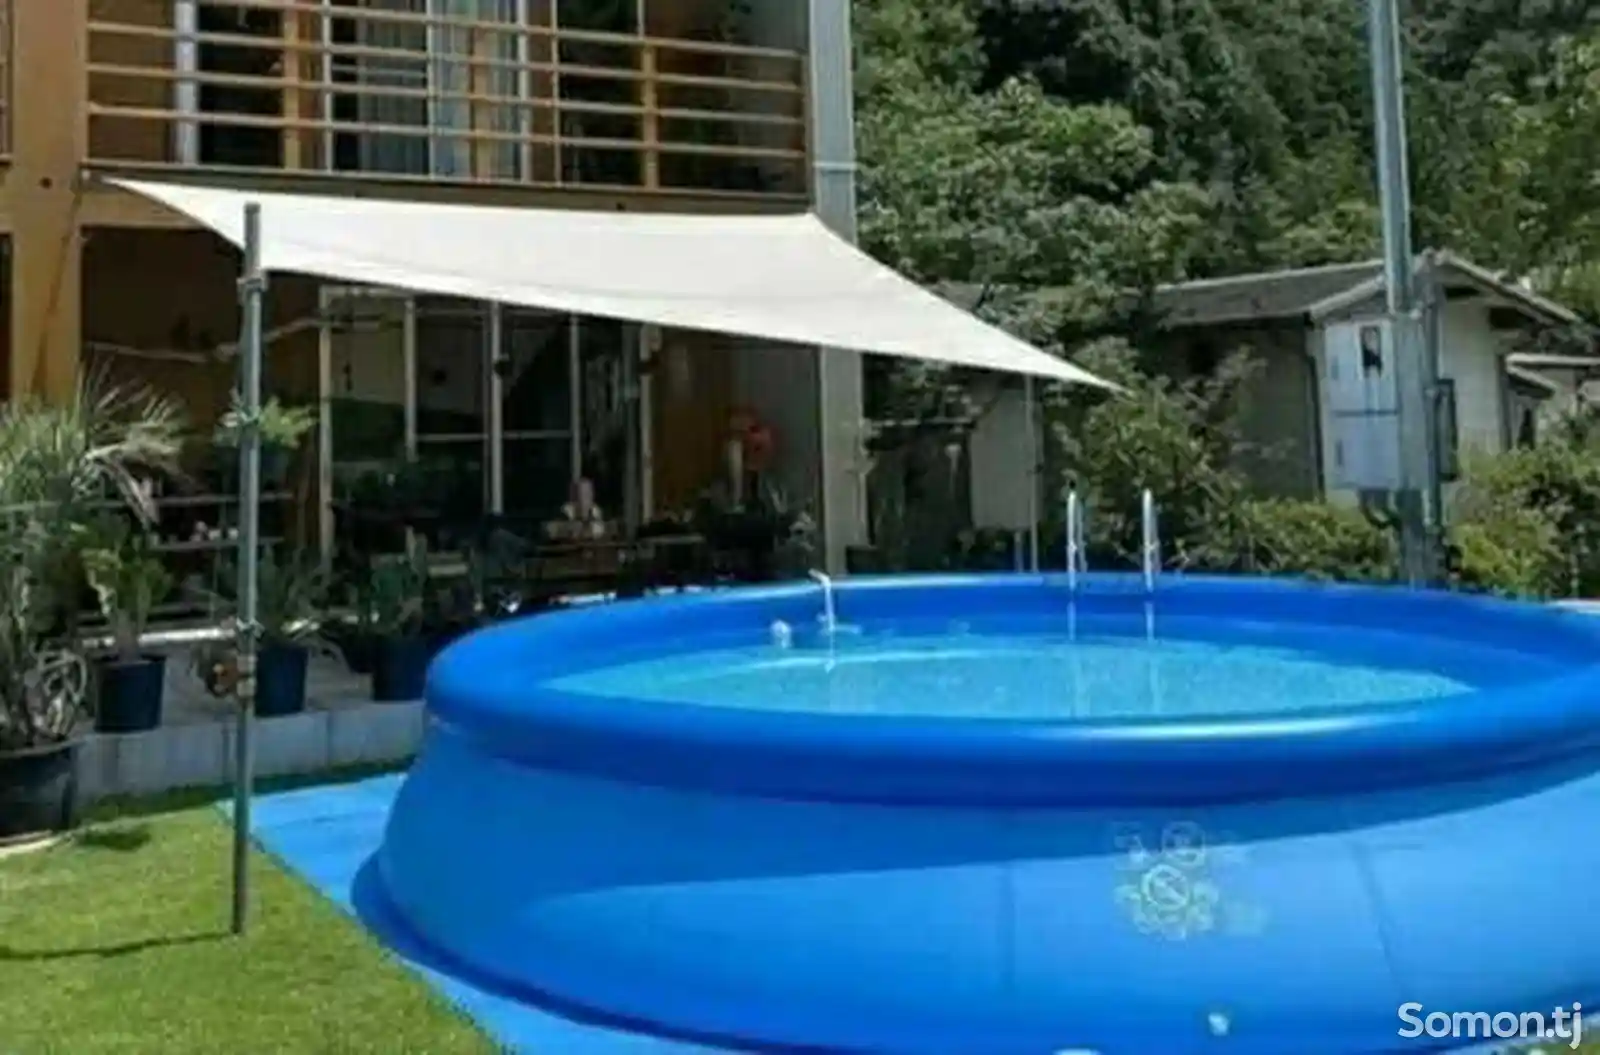 Надувной бассейн